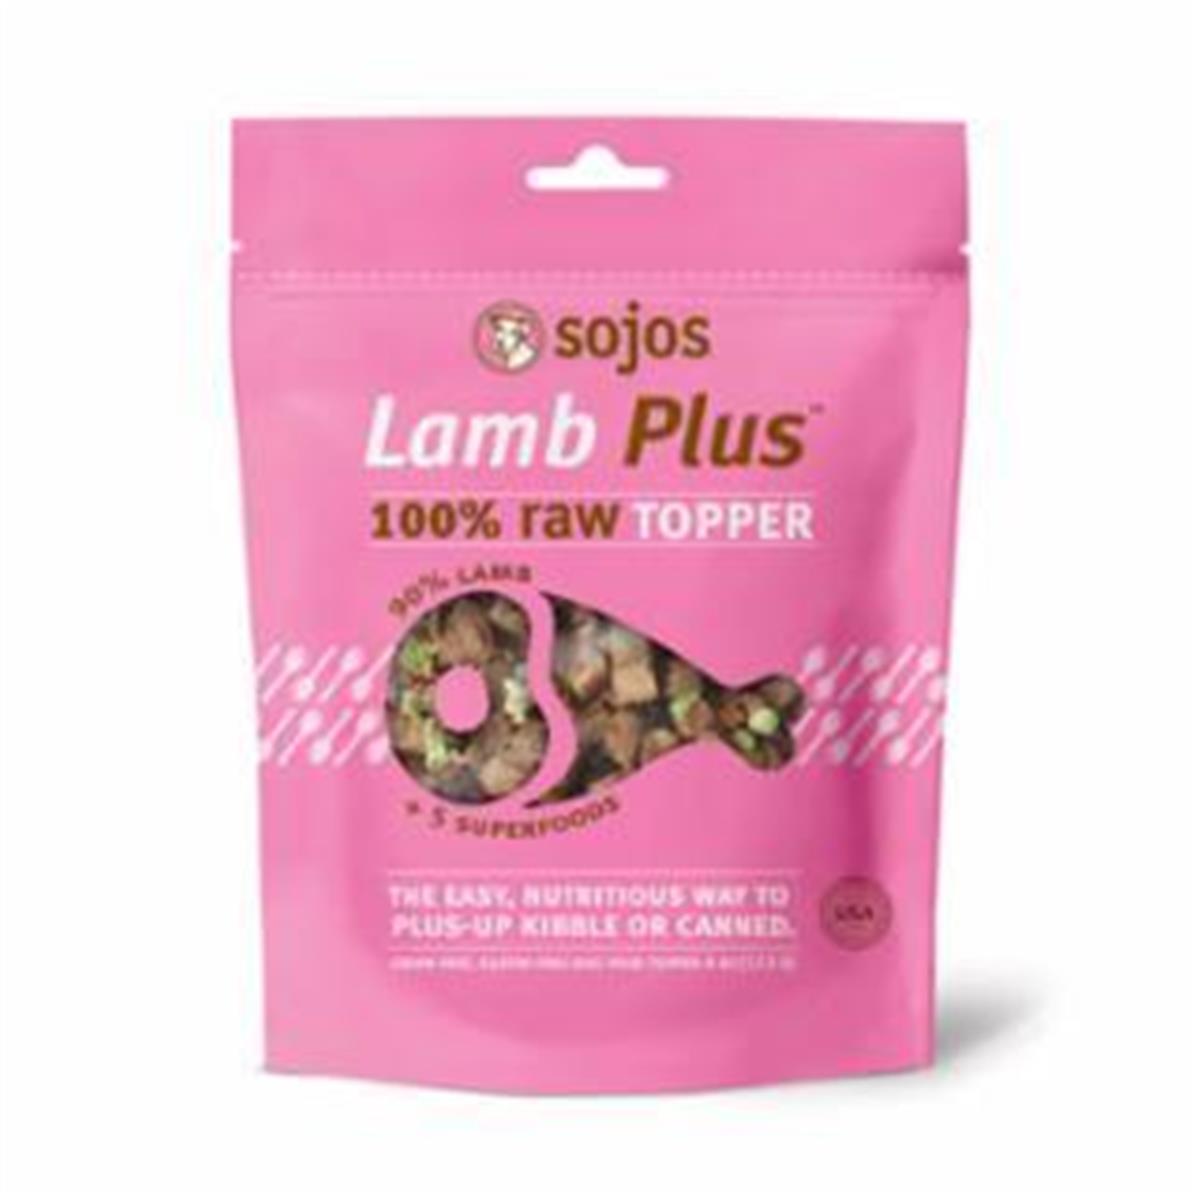 Sj40043 4 Oz Lamb Plus Topper Freeze Dried Dog Food